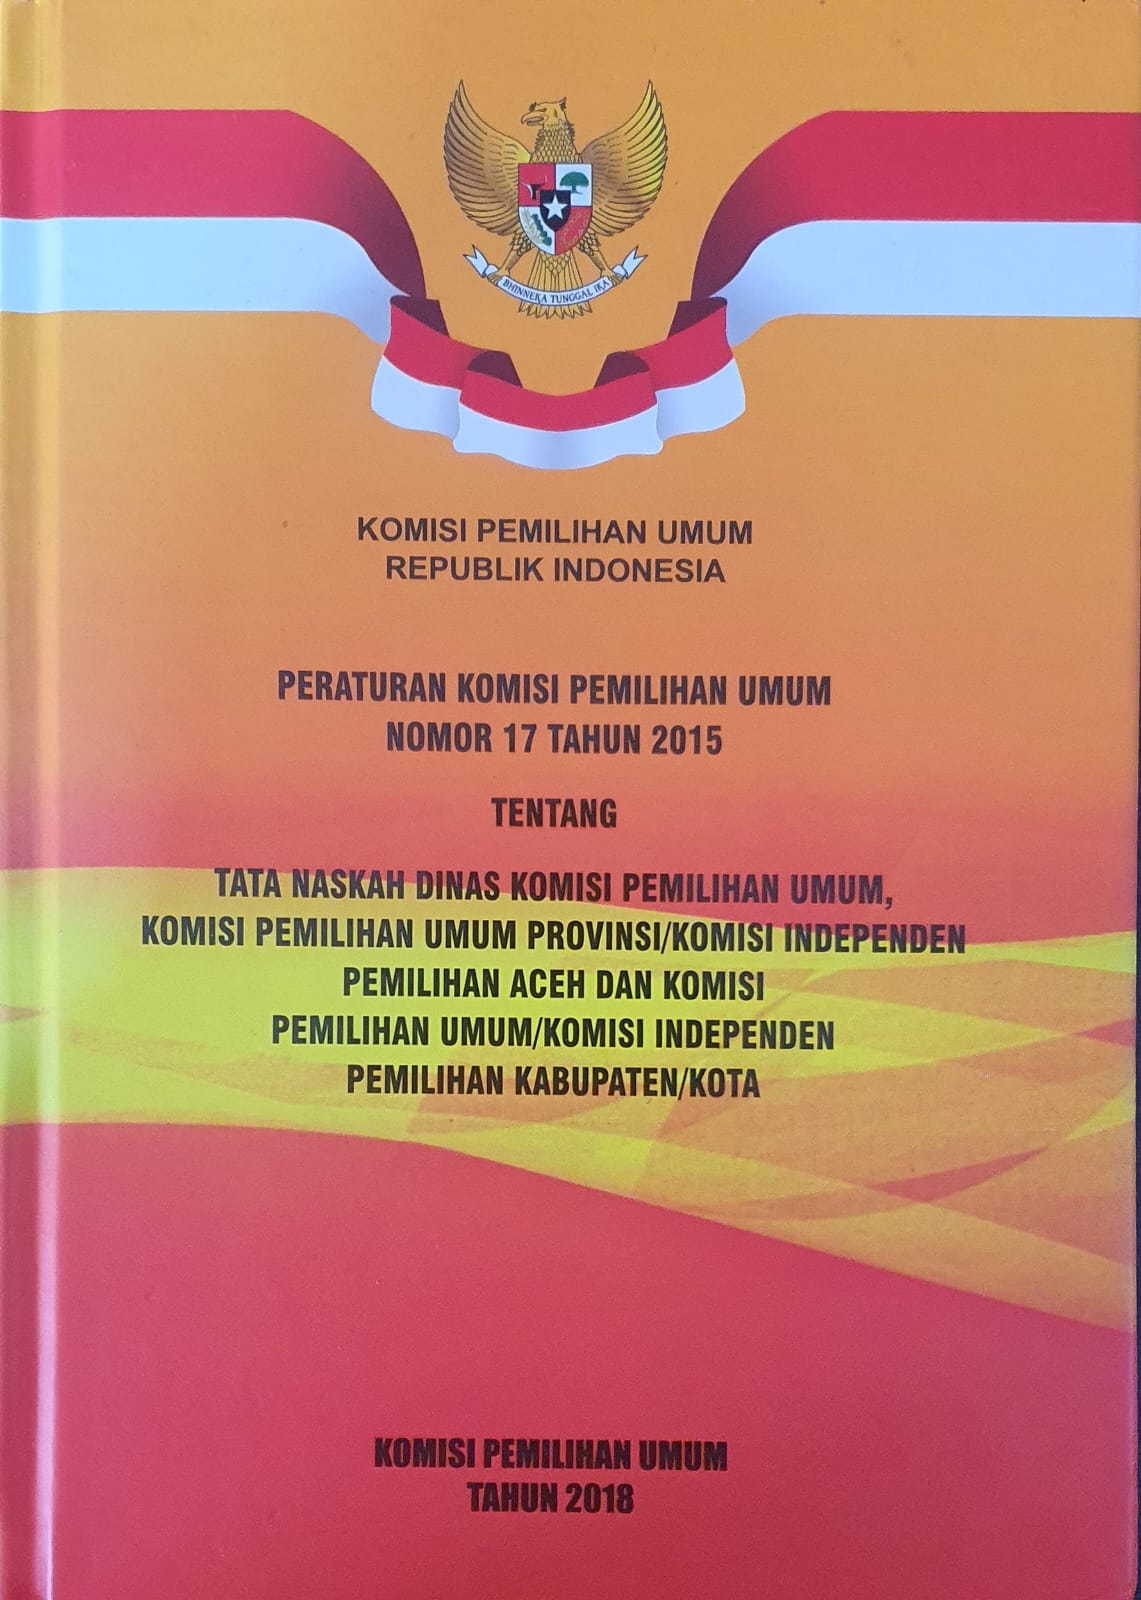 Peraturan Komisi Pemilihan Umum Nomor 17 Tahun 2015 tentang Tata Naskah Dinas Komisi Pemilihan Umum, Komisi Pemilihan Umum Provinsi/Komisi Independen Pemilihan Aceh dan Komisi Pemilihan Umum/Komisi Independen Pemilihan Kabupaten/Kota